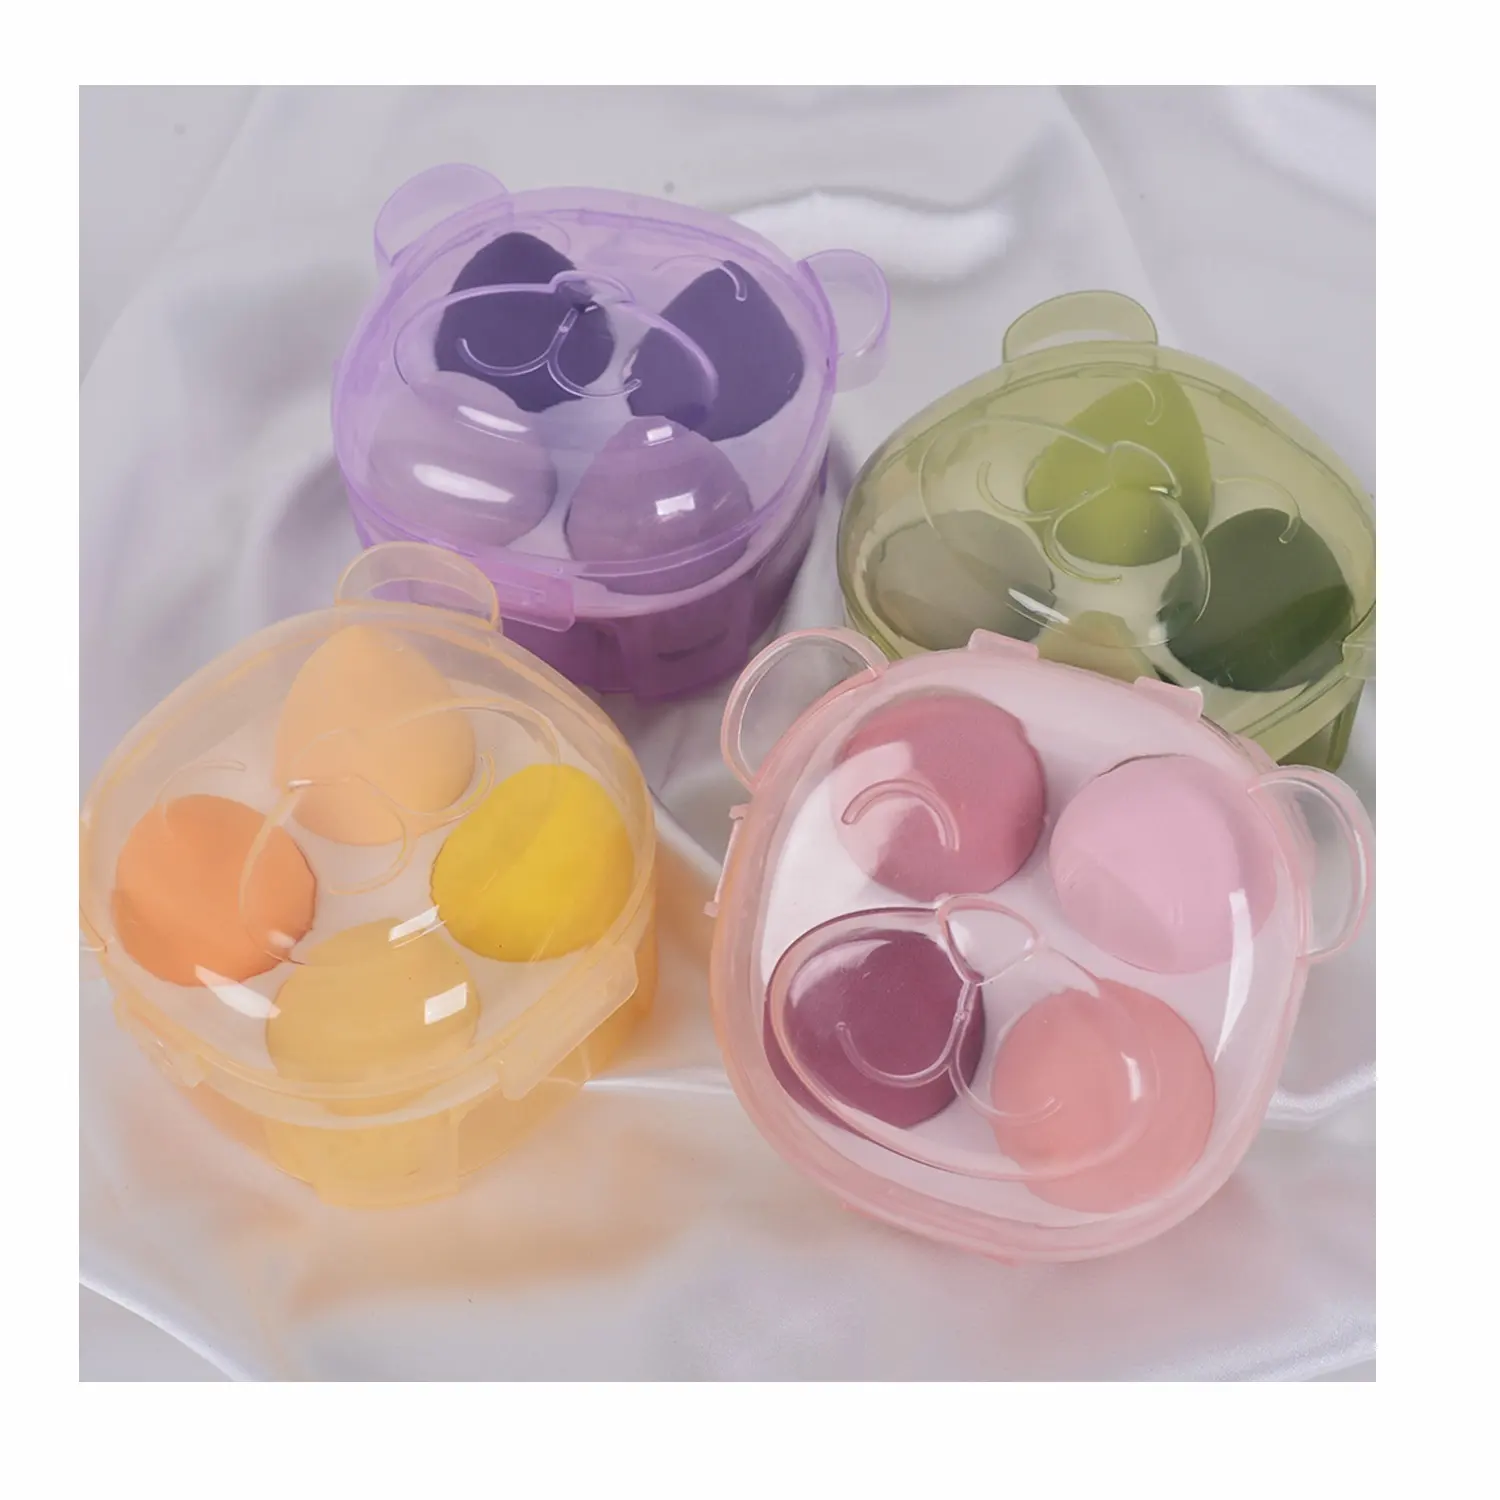 Muestras De Maquillaje Gratis 4 Piezas Wholesale Bear Beauty Egg Blender Cases Price Private Label Soft Puff Makeup Sponge Set